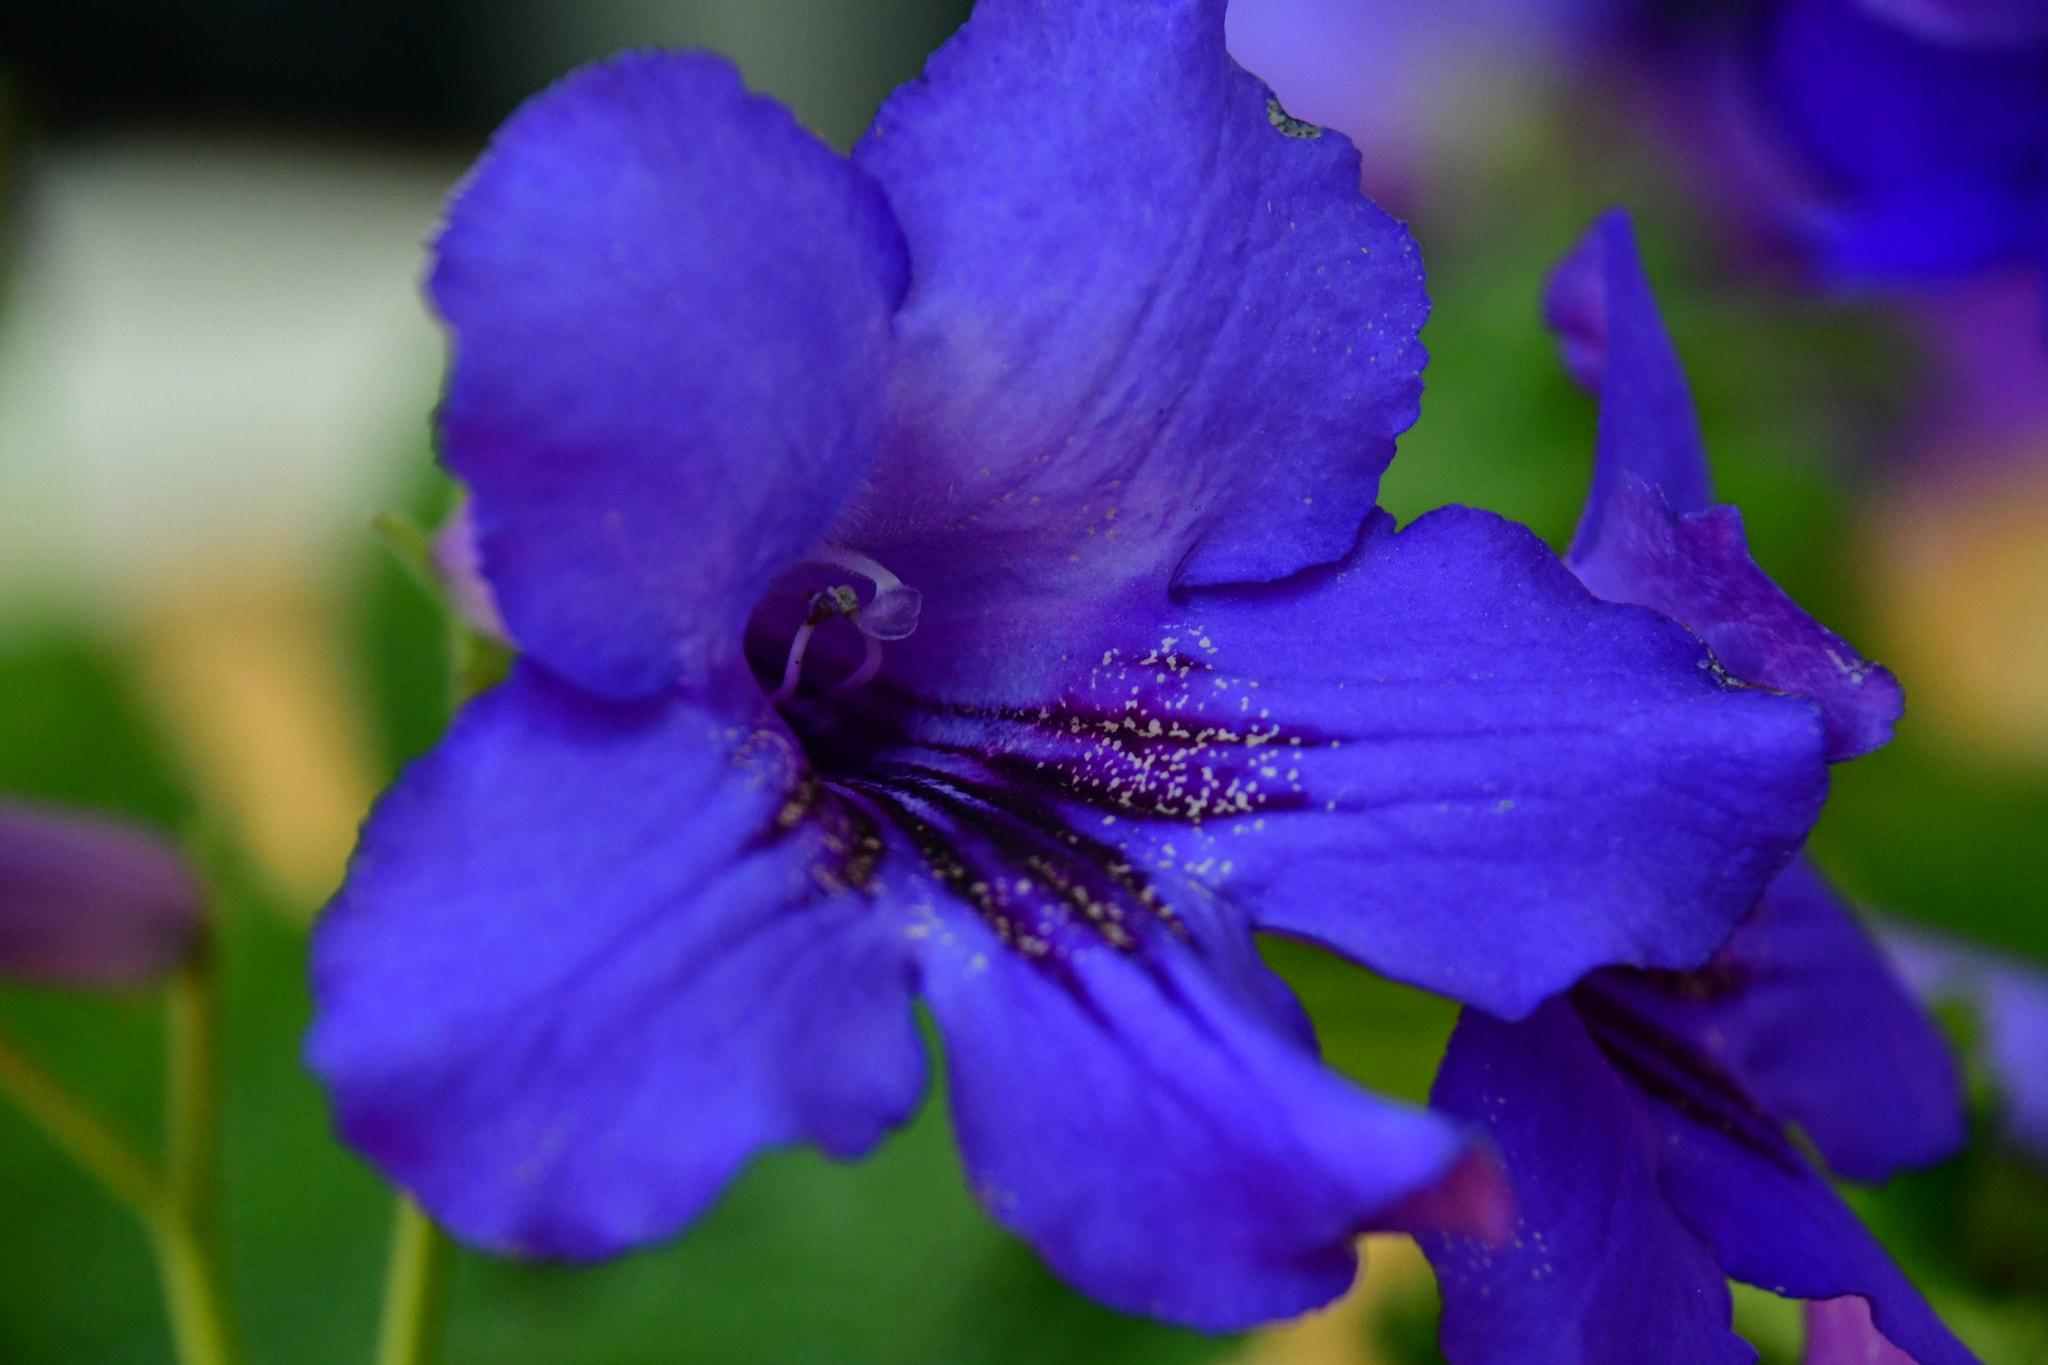 Nikon AF-S DX Nikkor 18-300mm F3.5-6.3G ED VR sample photo. Blue flower  photography